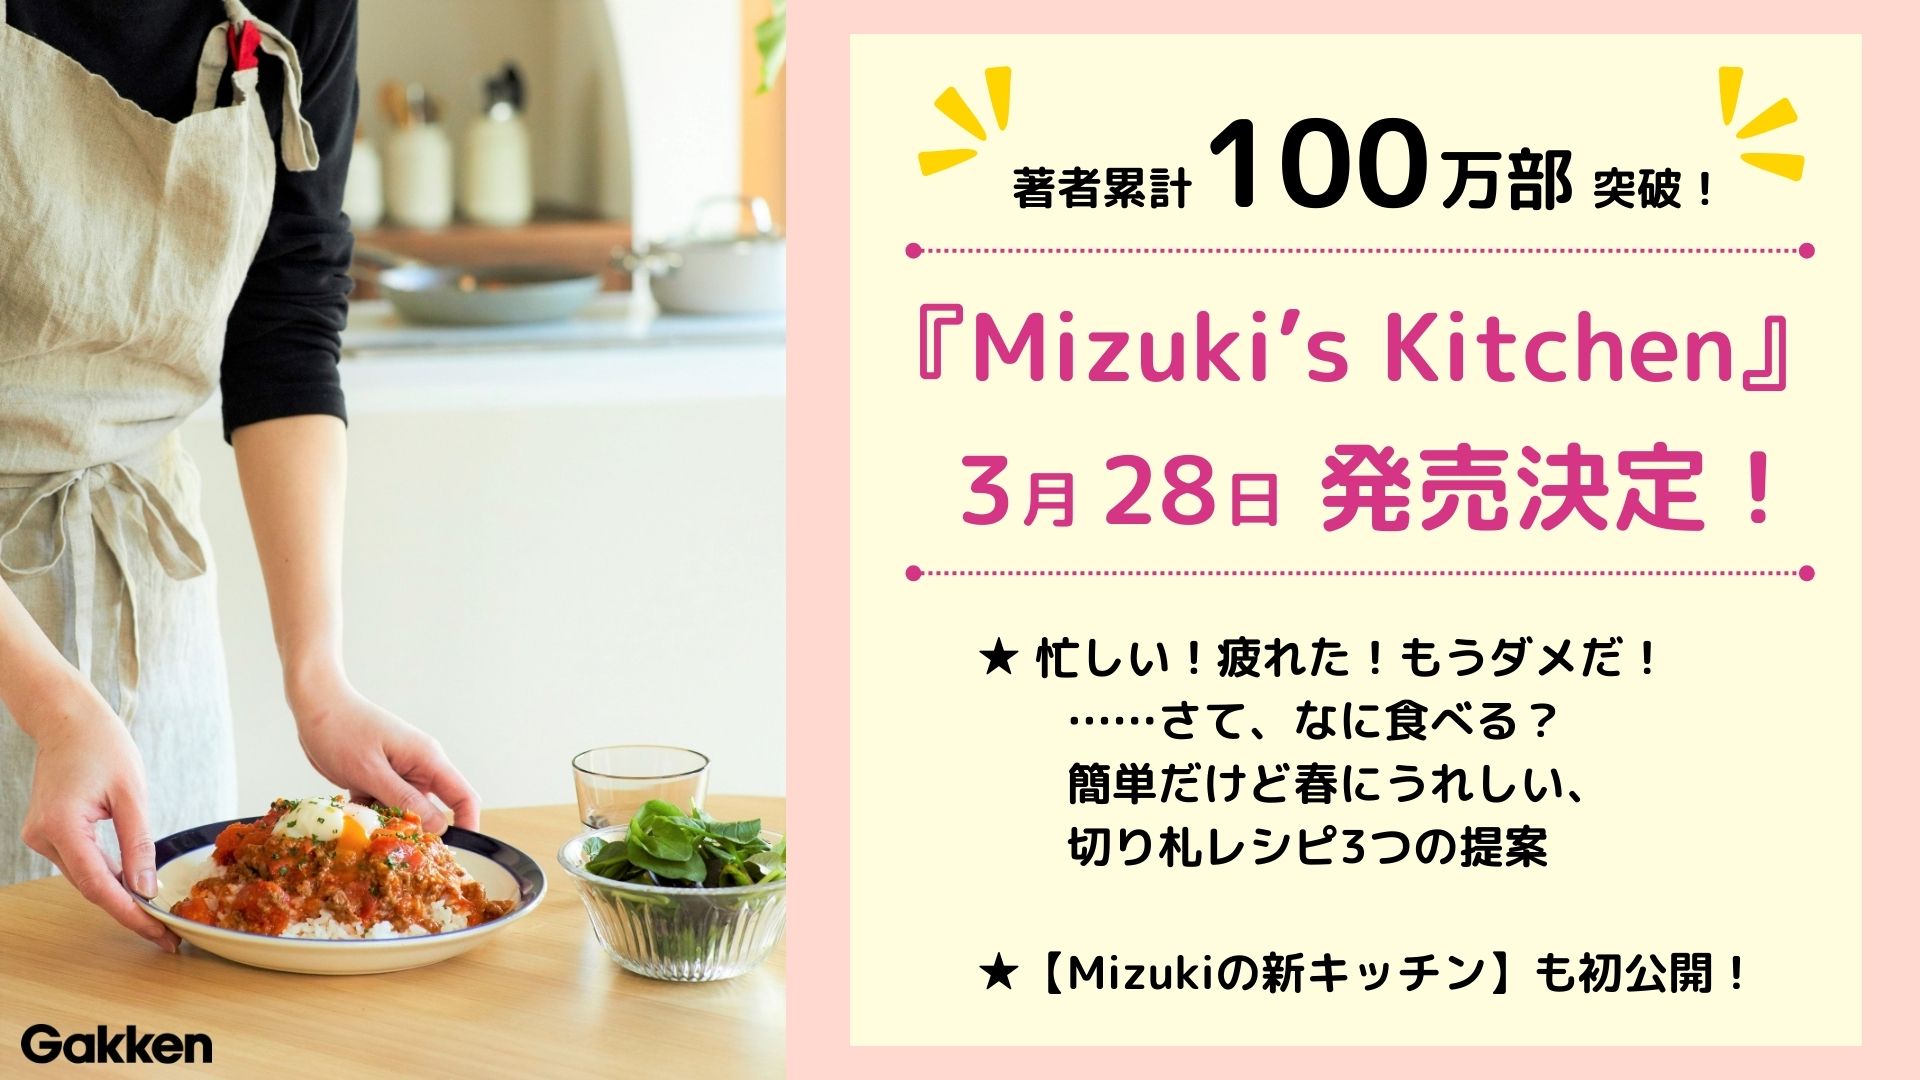 『Mizuki’snbsp; Kitchen』発売告知画像